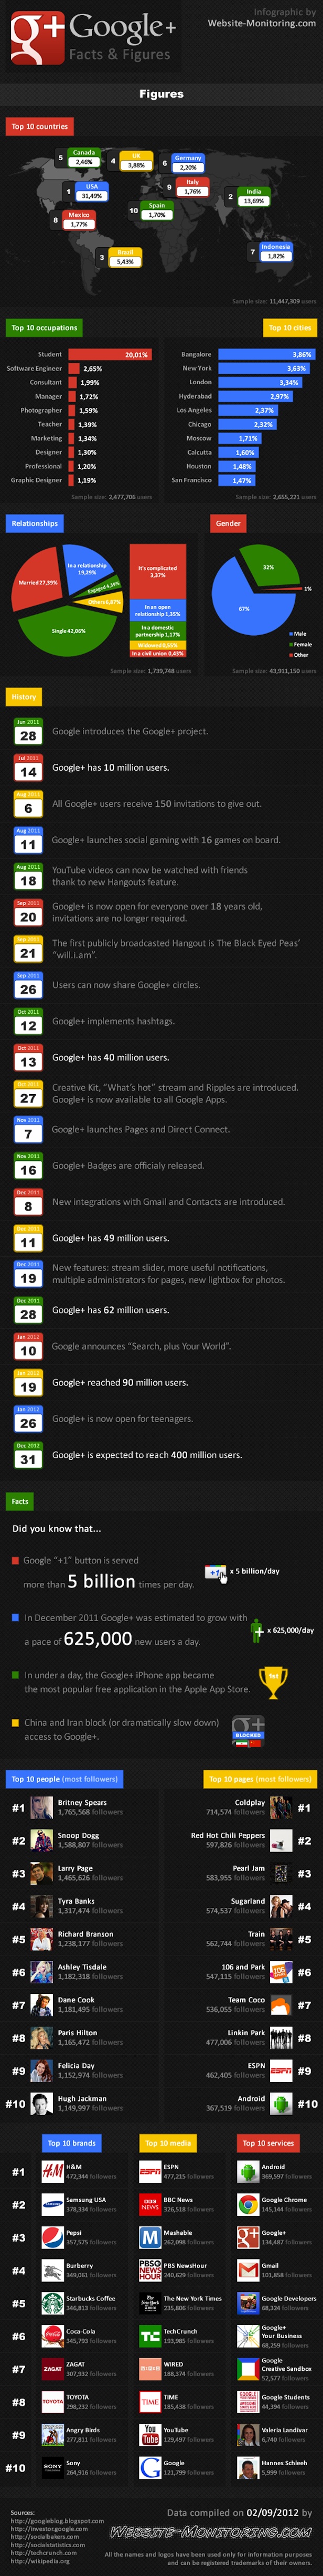 GooglePlus facts & figures